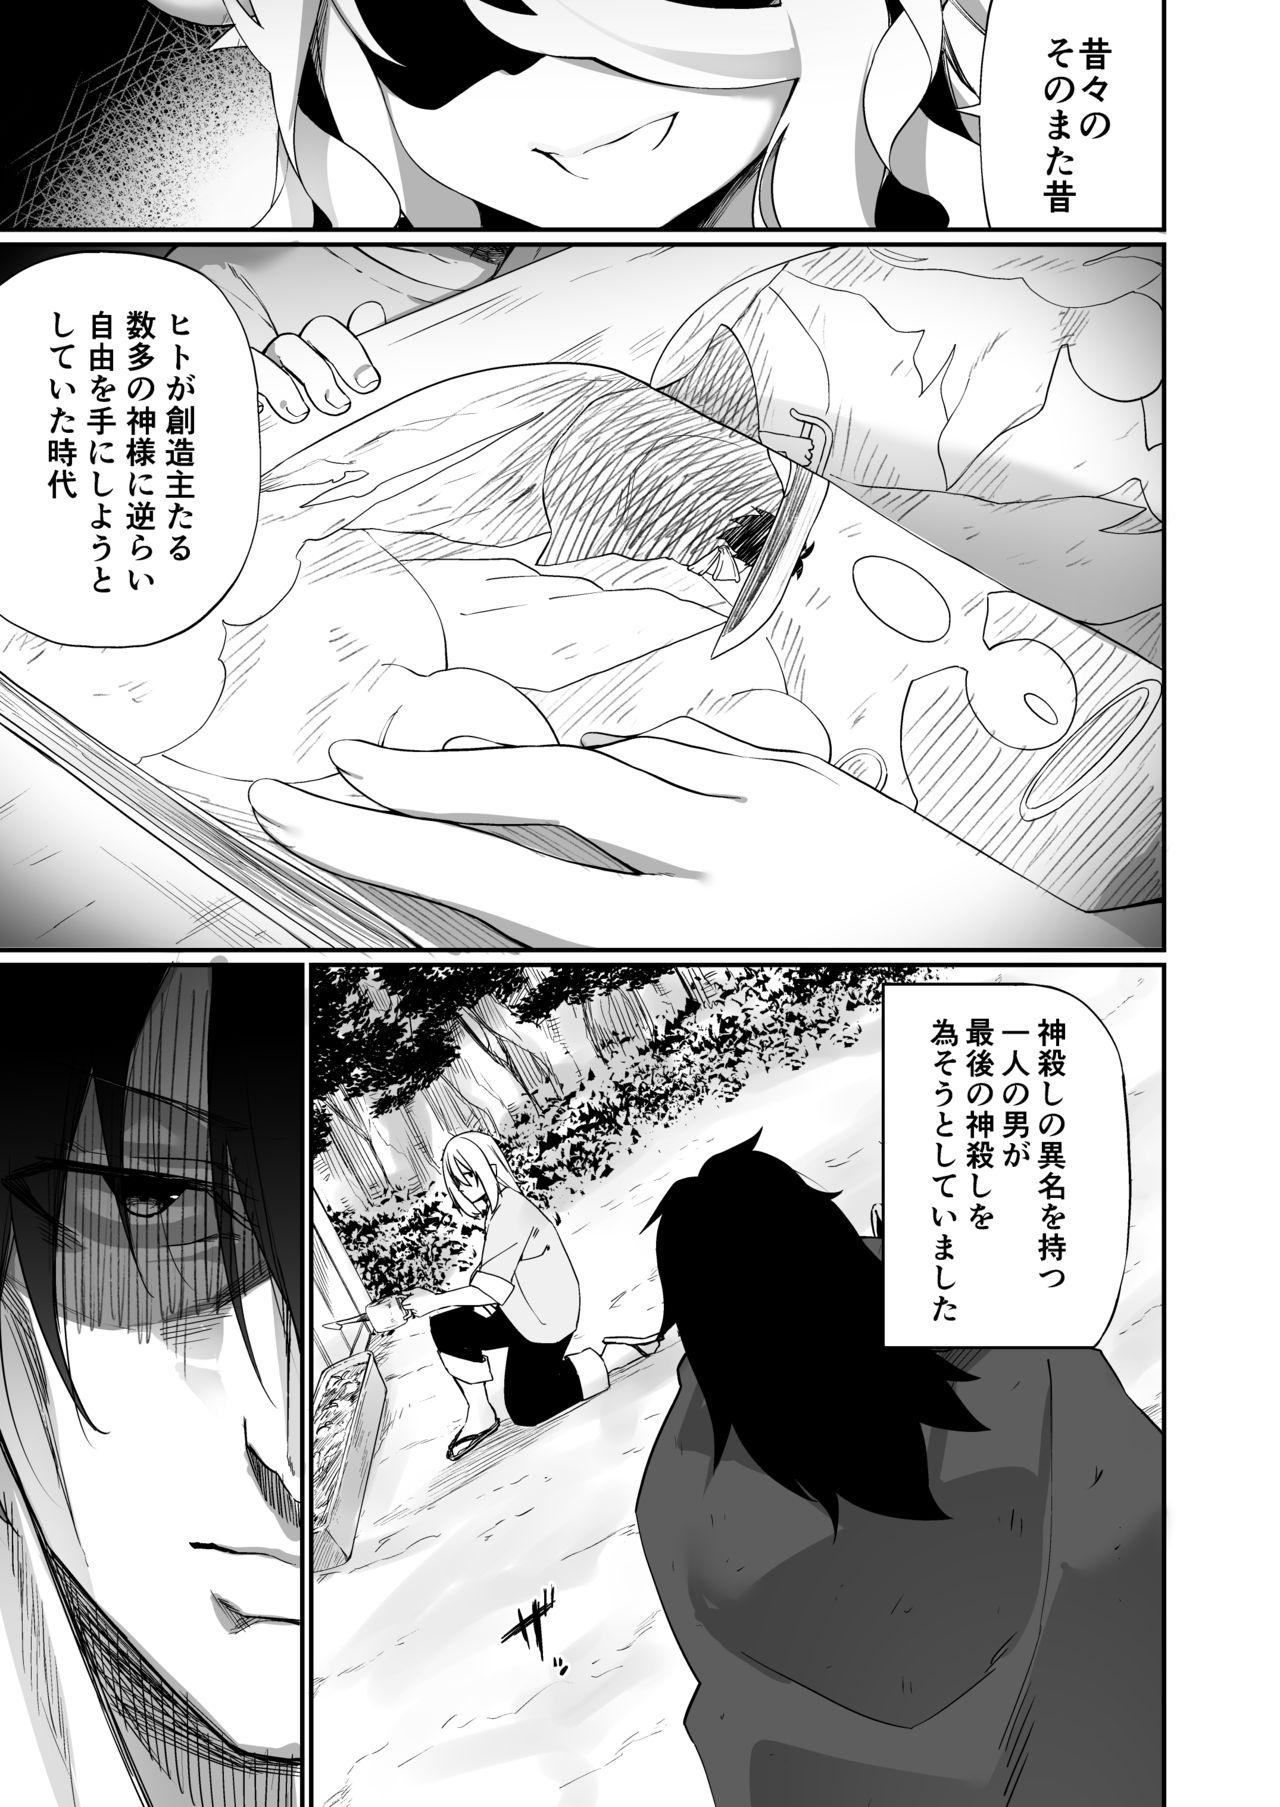 Panocha TS miko-san wa aragaitai! - Original Alone - Page 2